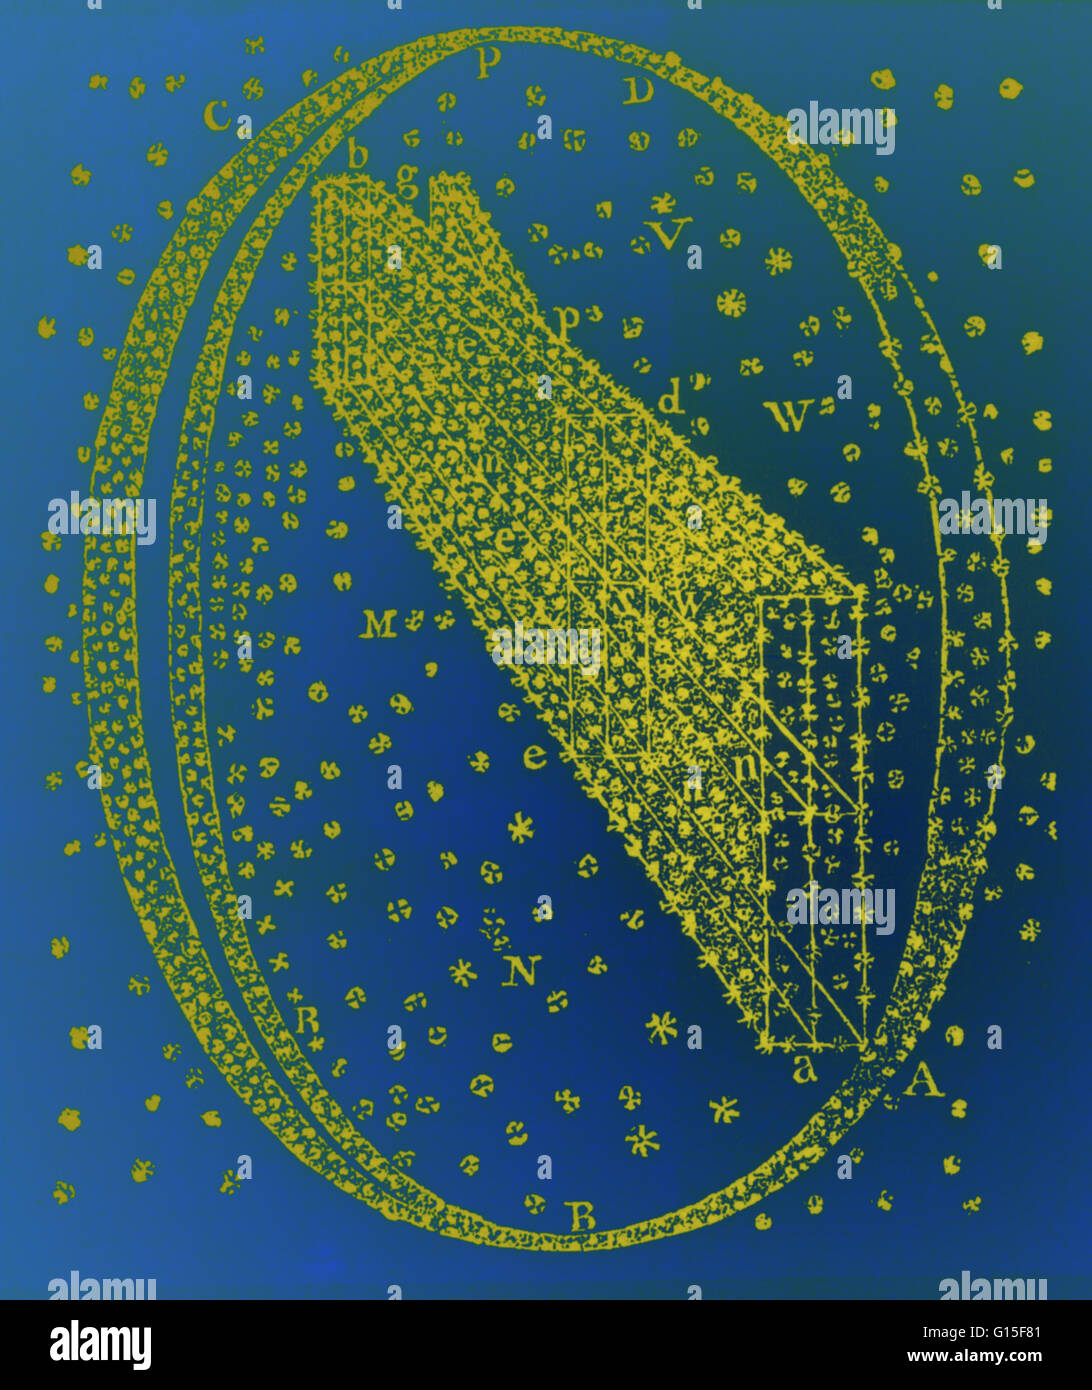 Herschel modello galattico, 1784. Questa è una delle numerose visualizzazioni disegnato dall'astronomo britannico William Herschel (1738-1822). Lavorando con sua sorella Caroline, Herschel tracciata la posizione di molti della Via Lattea di stelle, e utilizzate questi dati a c Foto Stock